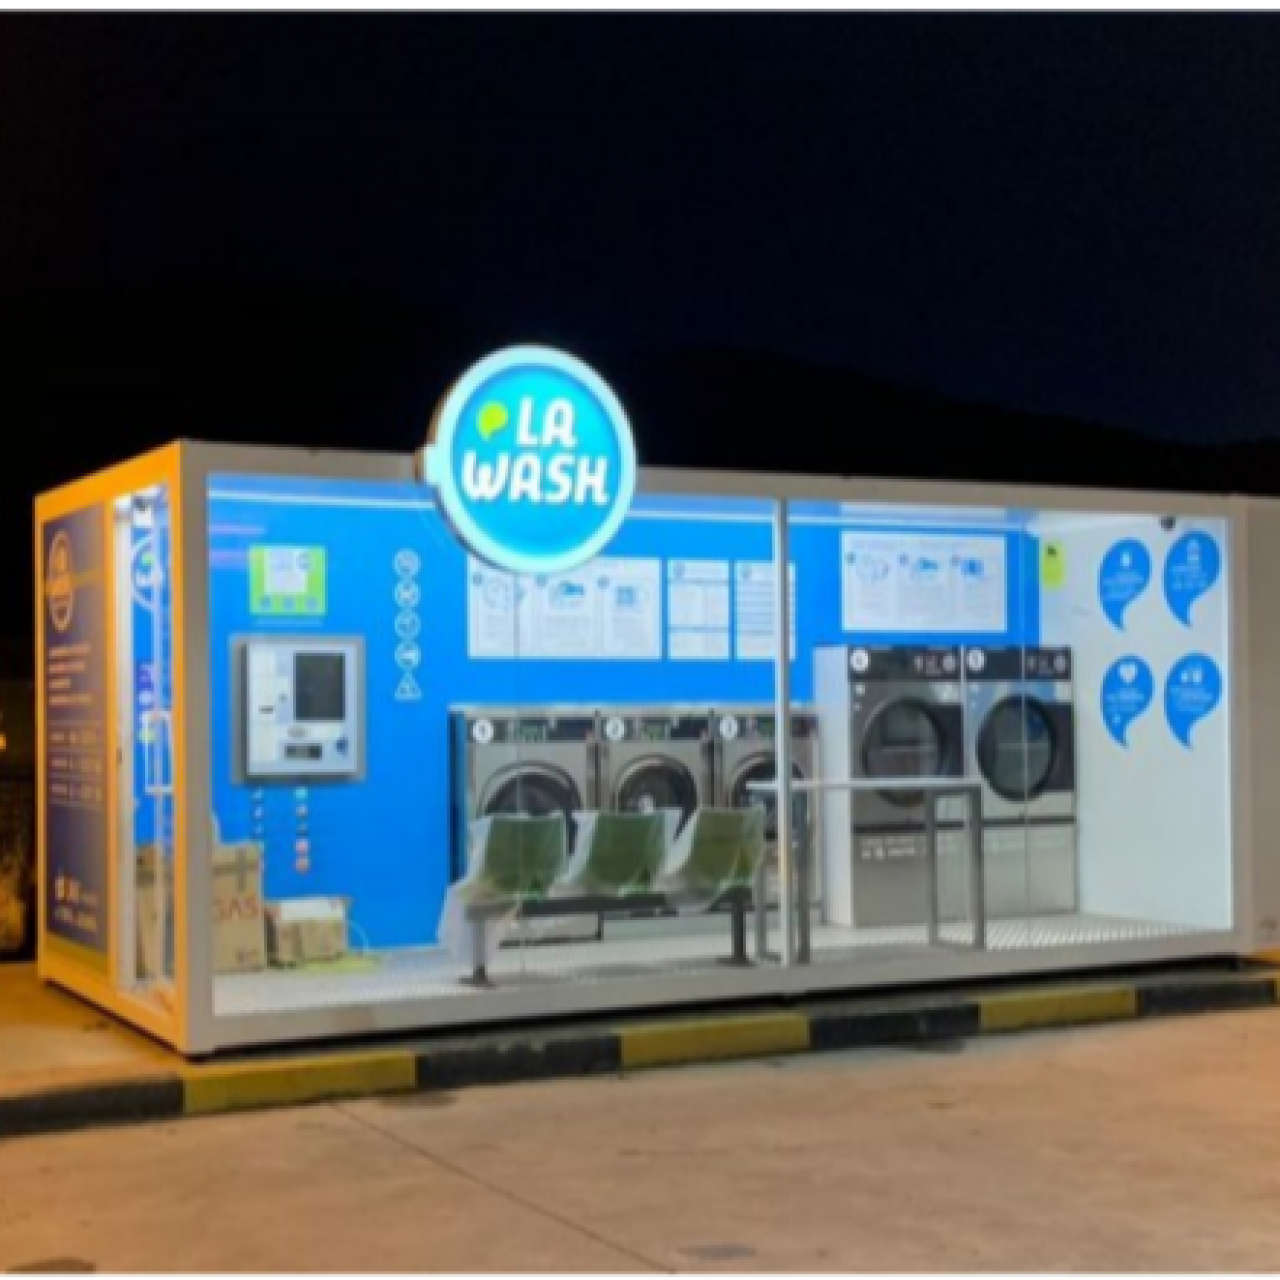 Bugaderies autoservei La Wash a benzineres, líders en innovació